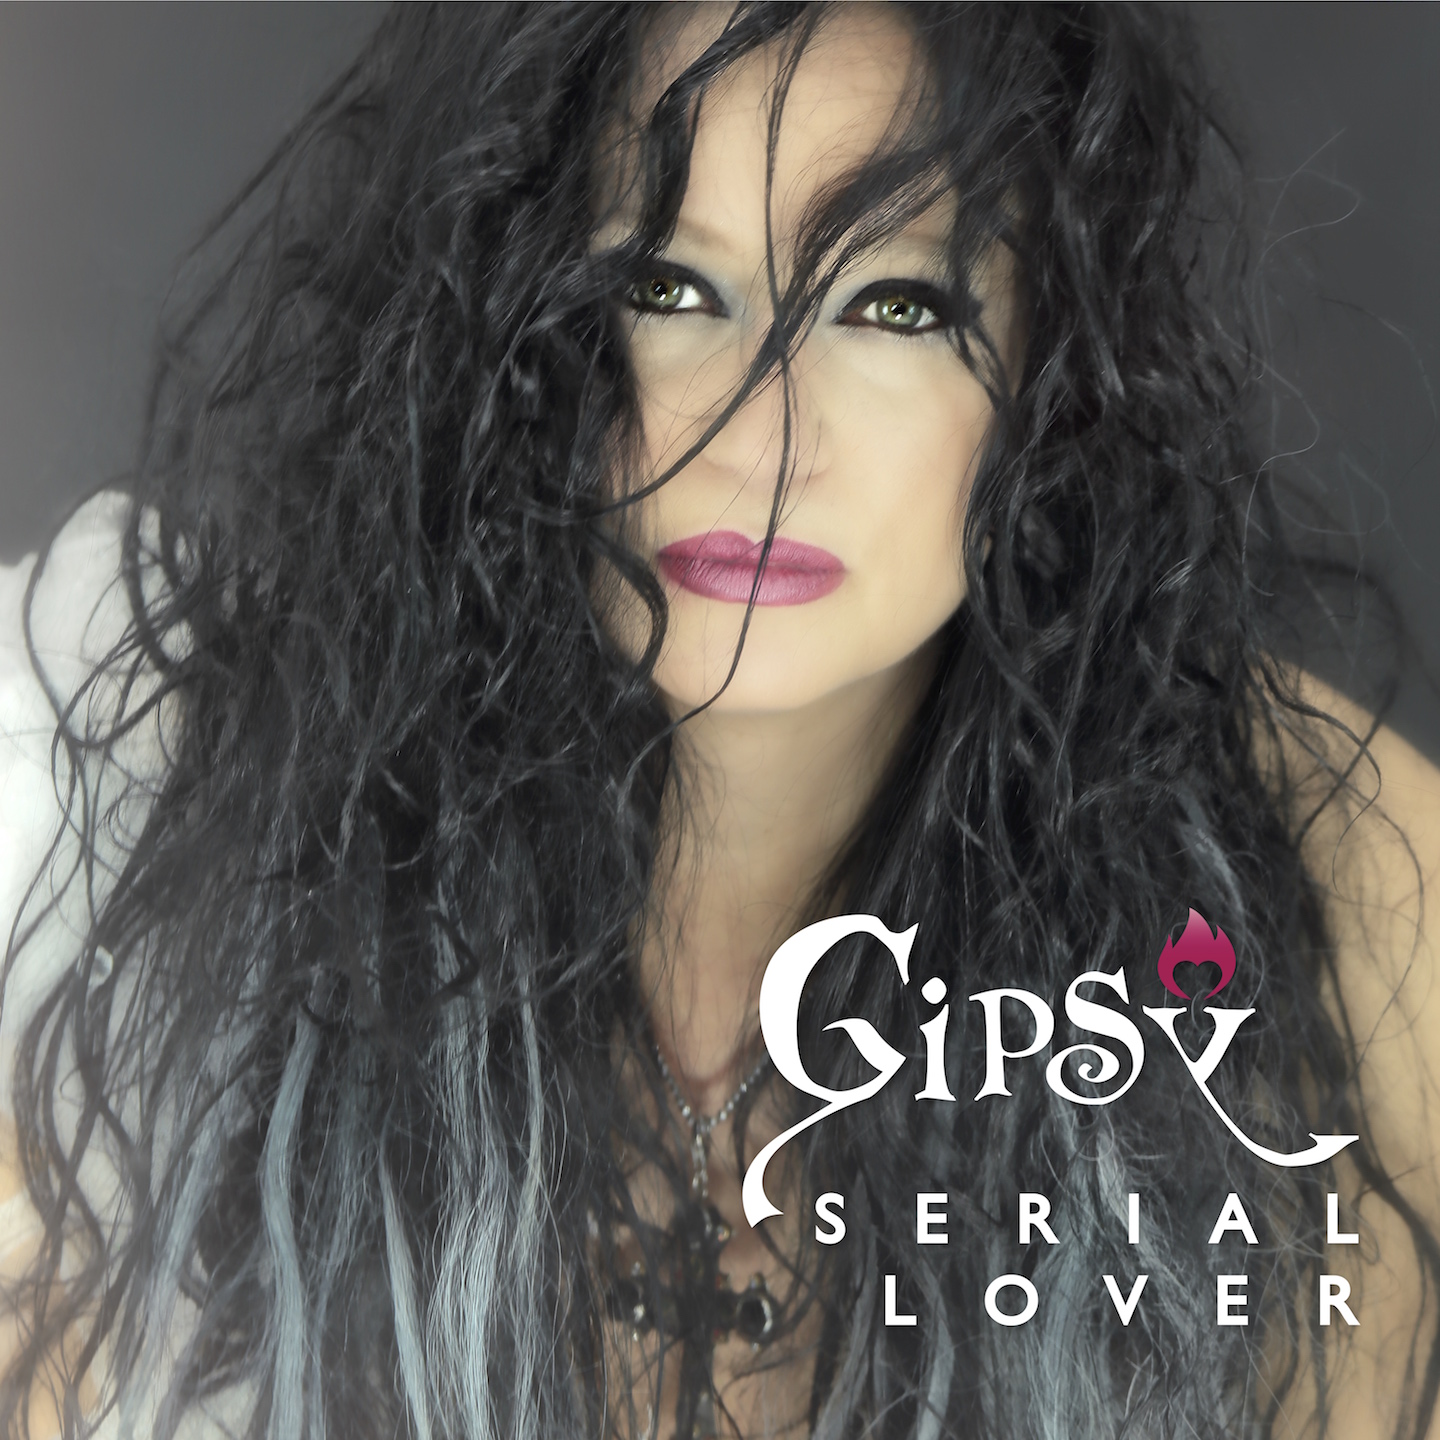 Foto 2 - Gipsy: da giovedì 16 maggio è on line “Serial Lover”, il nuovo videoclip della cantautrice Marta Fiorucci in arte Gipsy